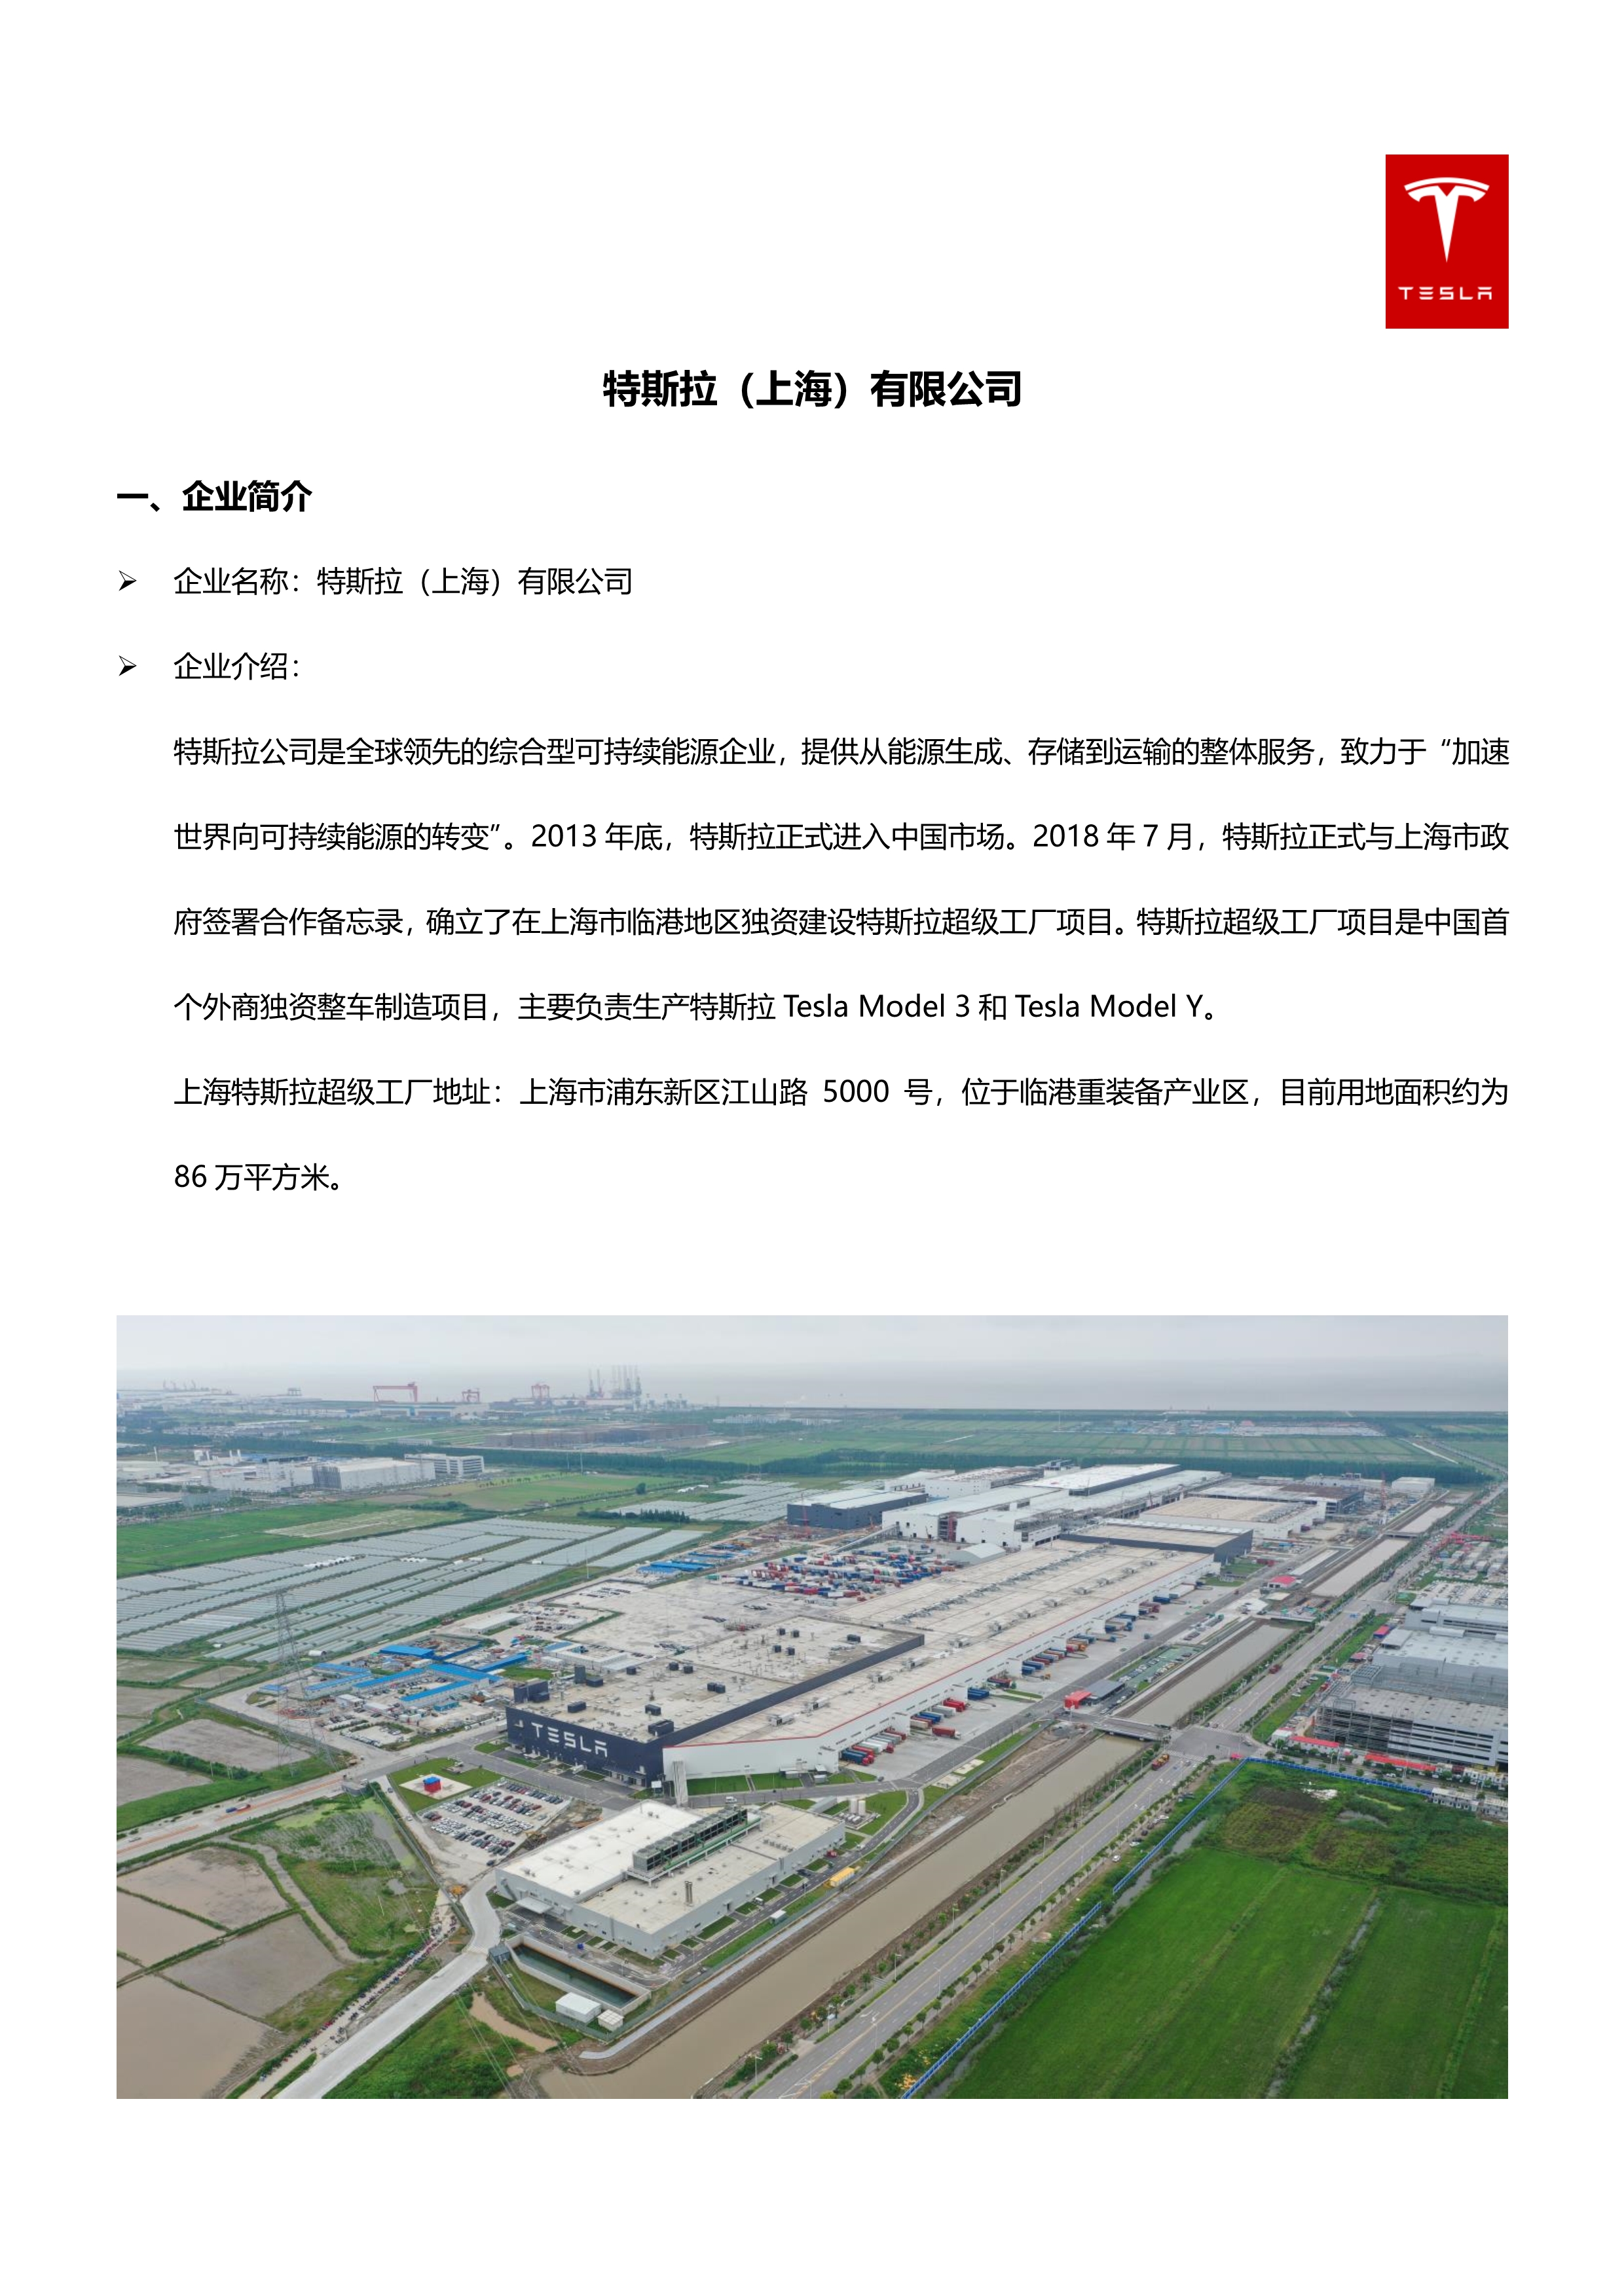 2022特斯拉上海工厂招聘简章-设施部门校招_1.jpg